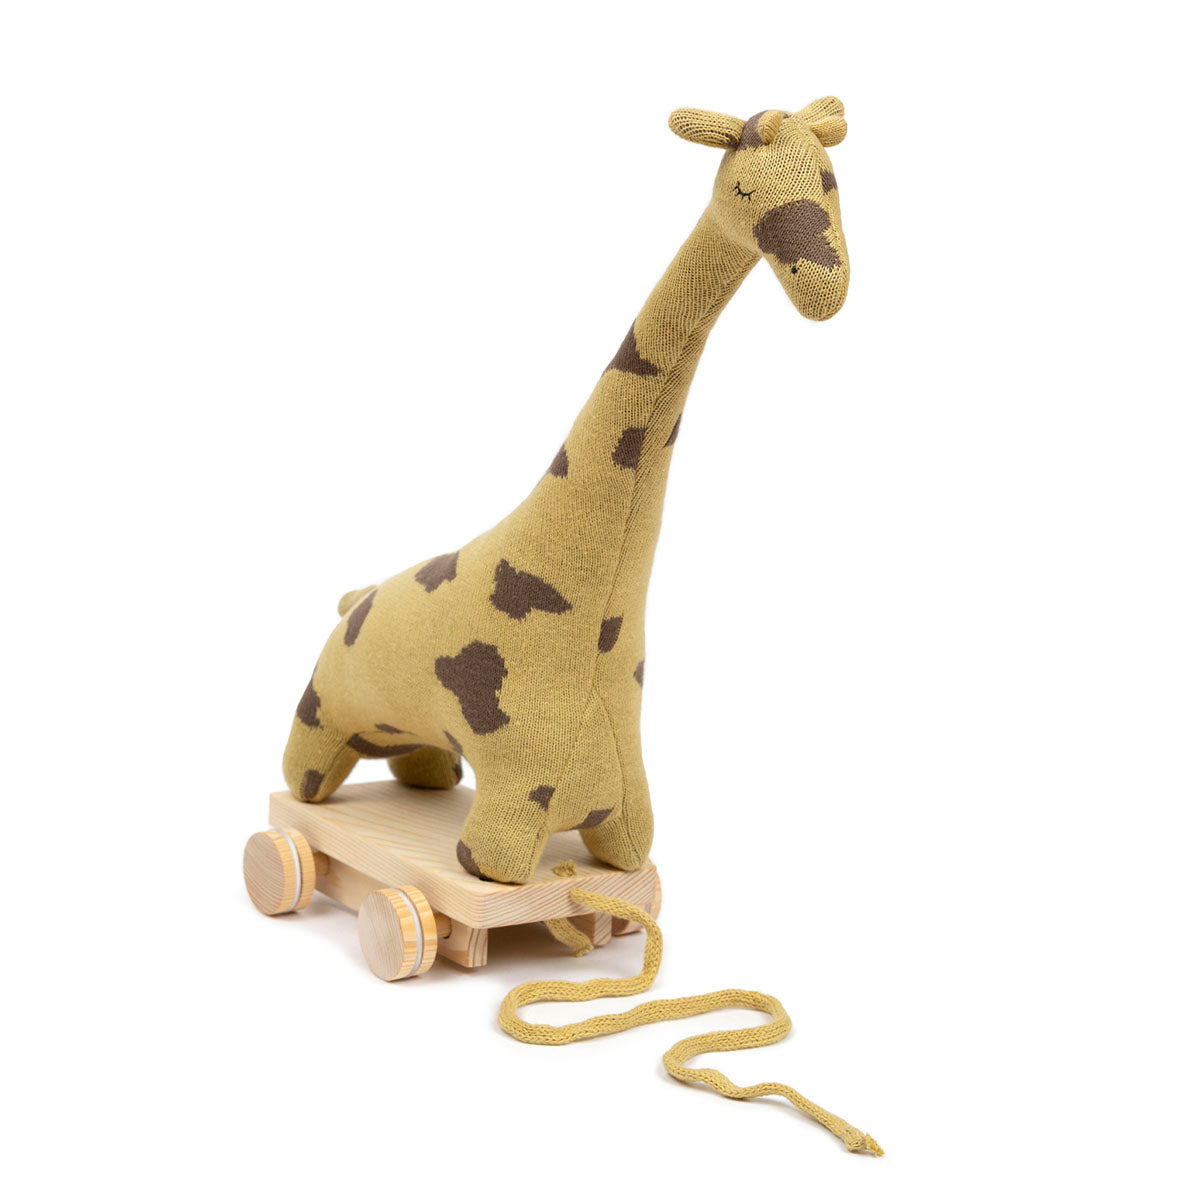 Het Smallstuff trekdier giraffe mustard is een super leuk speeltje voor wanneer je kindje net heeft leren lopen. Samen met dit leuke trekdier gaat jouw kleintje op pad; de wereld ontdekken! VanZus.